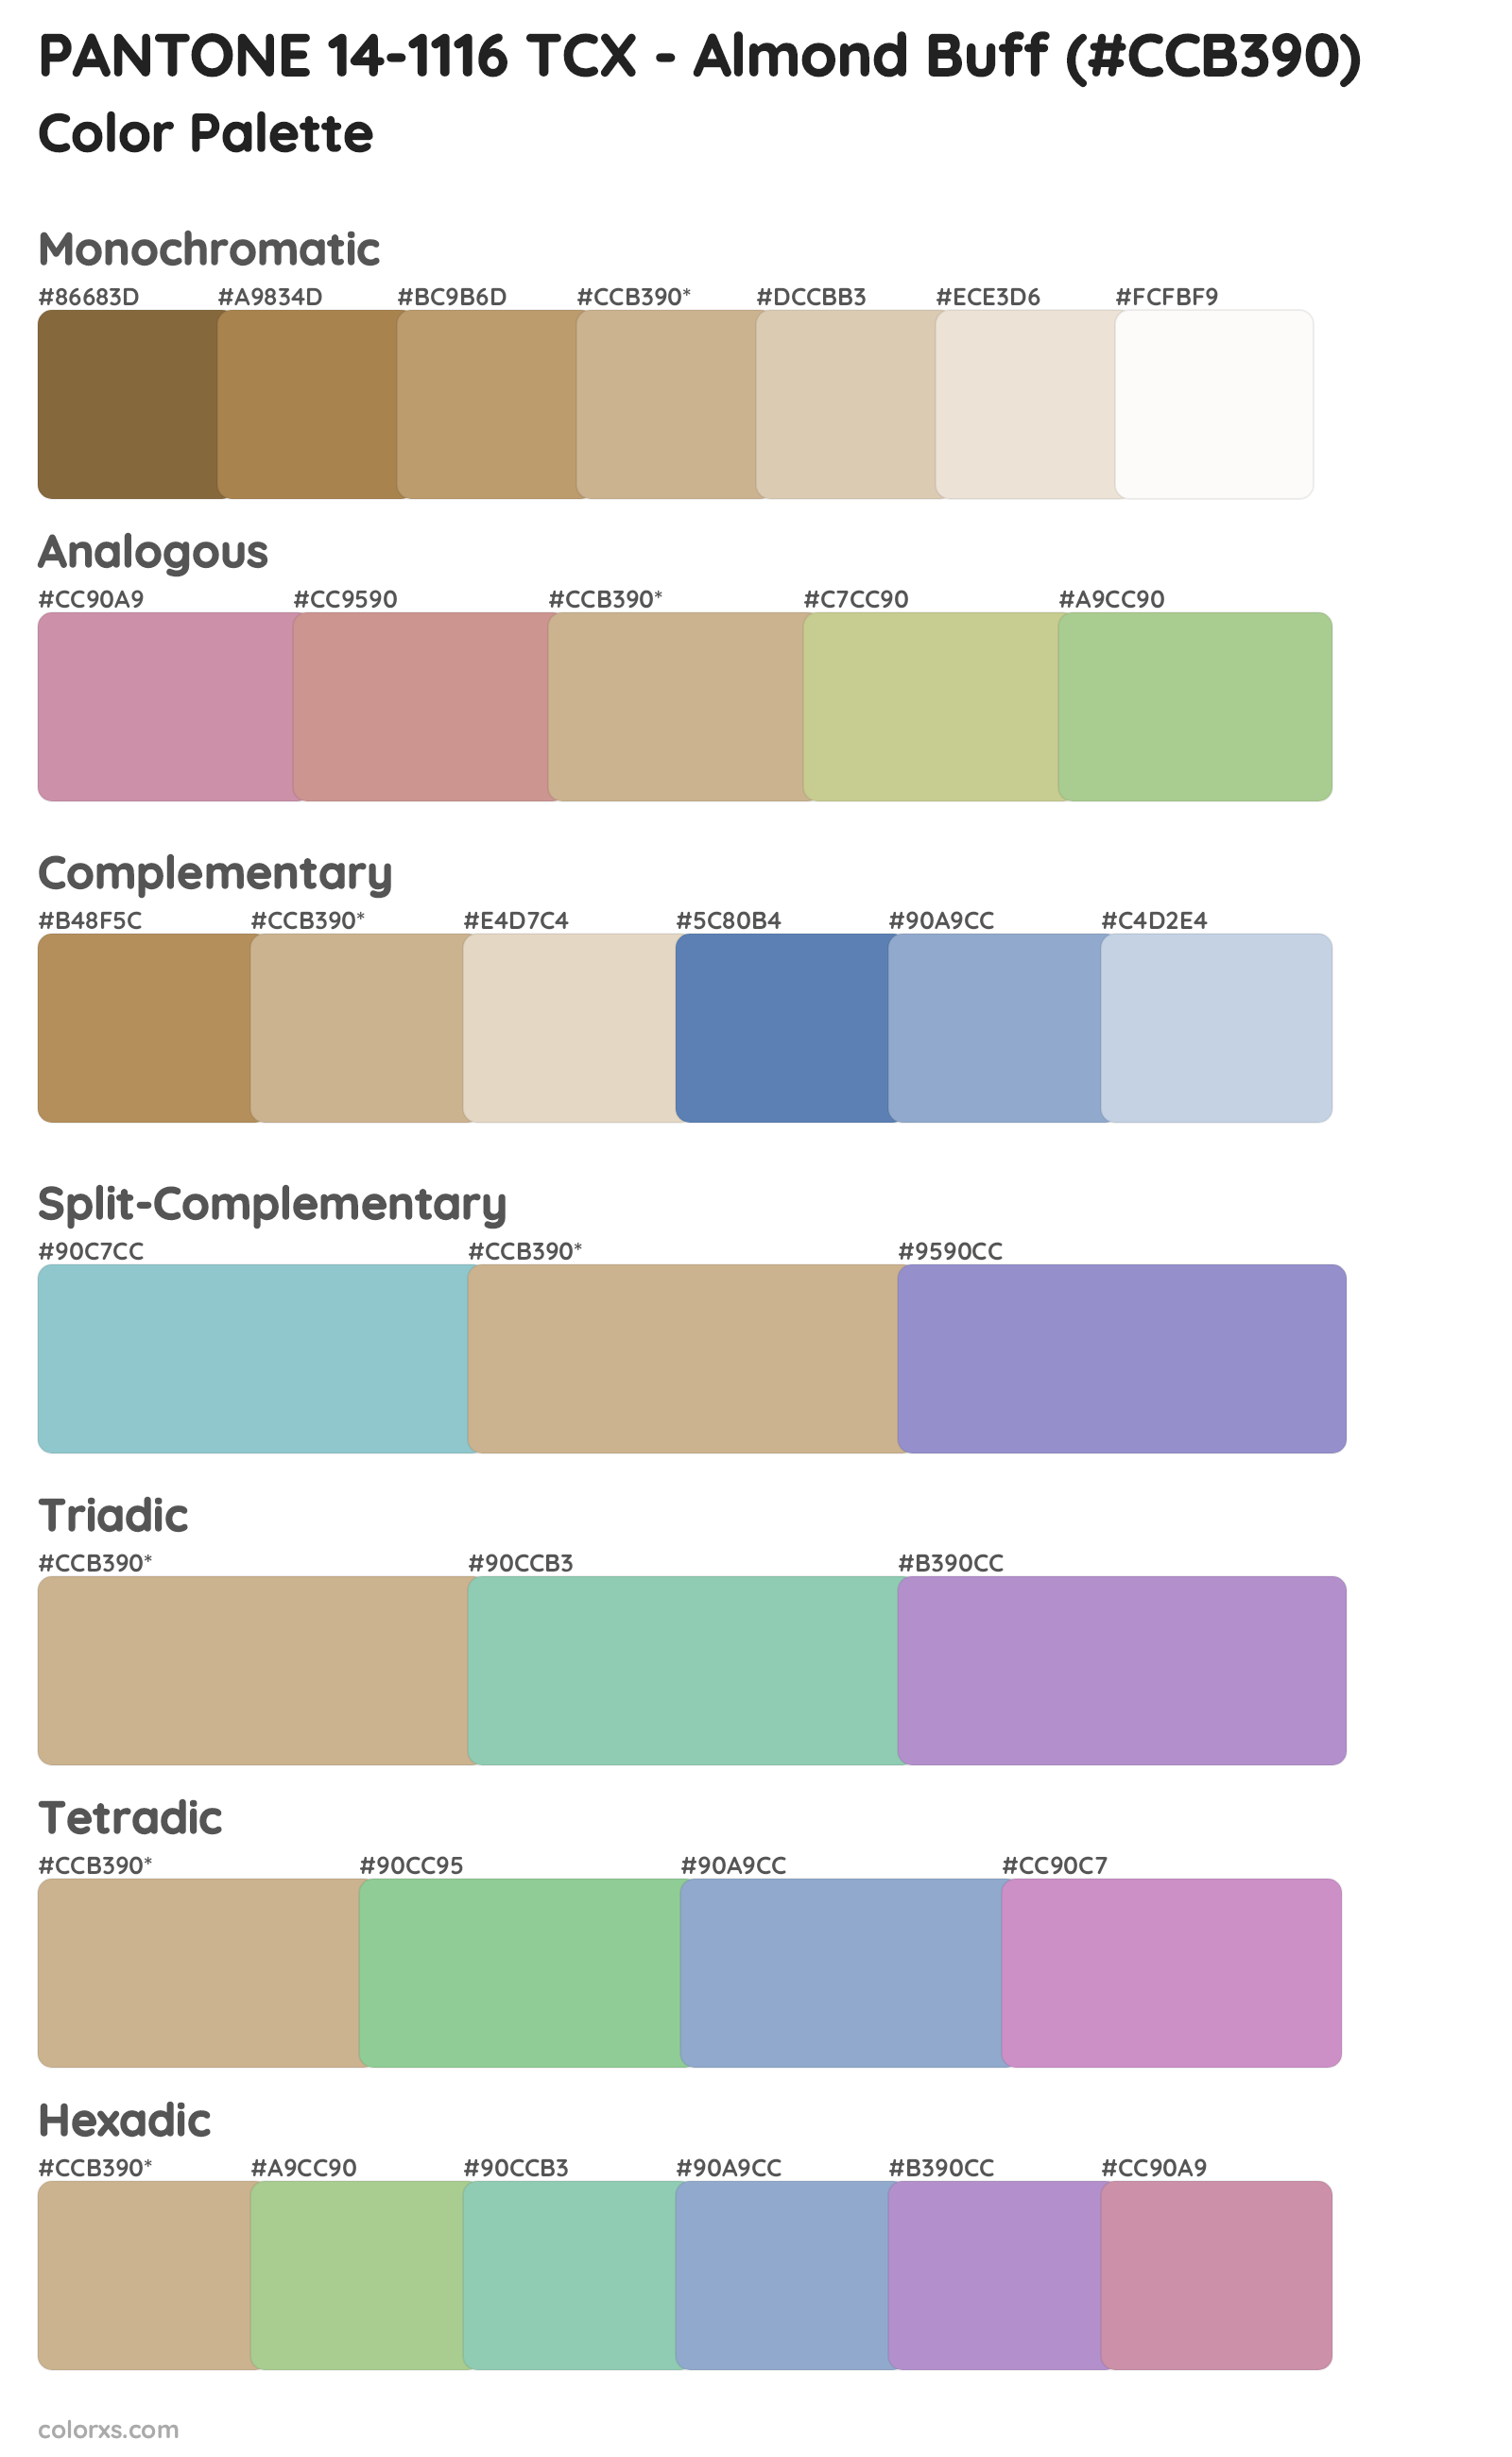 PANTONE 14-1116 TCX - Almond Buff Color Scheme Palettes